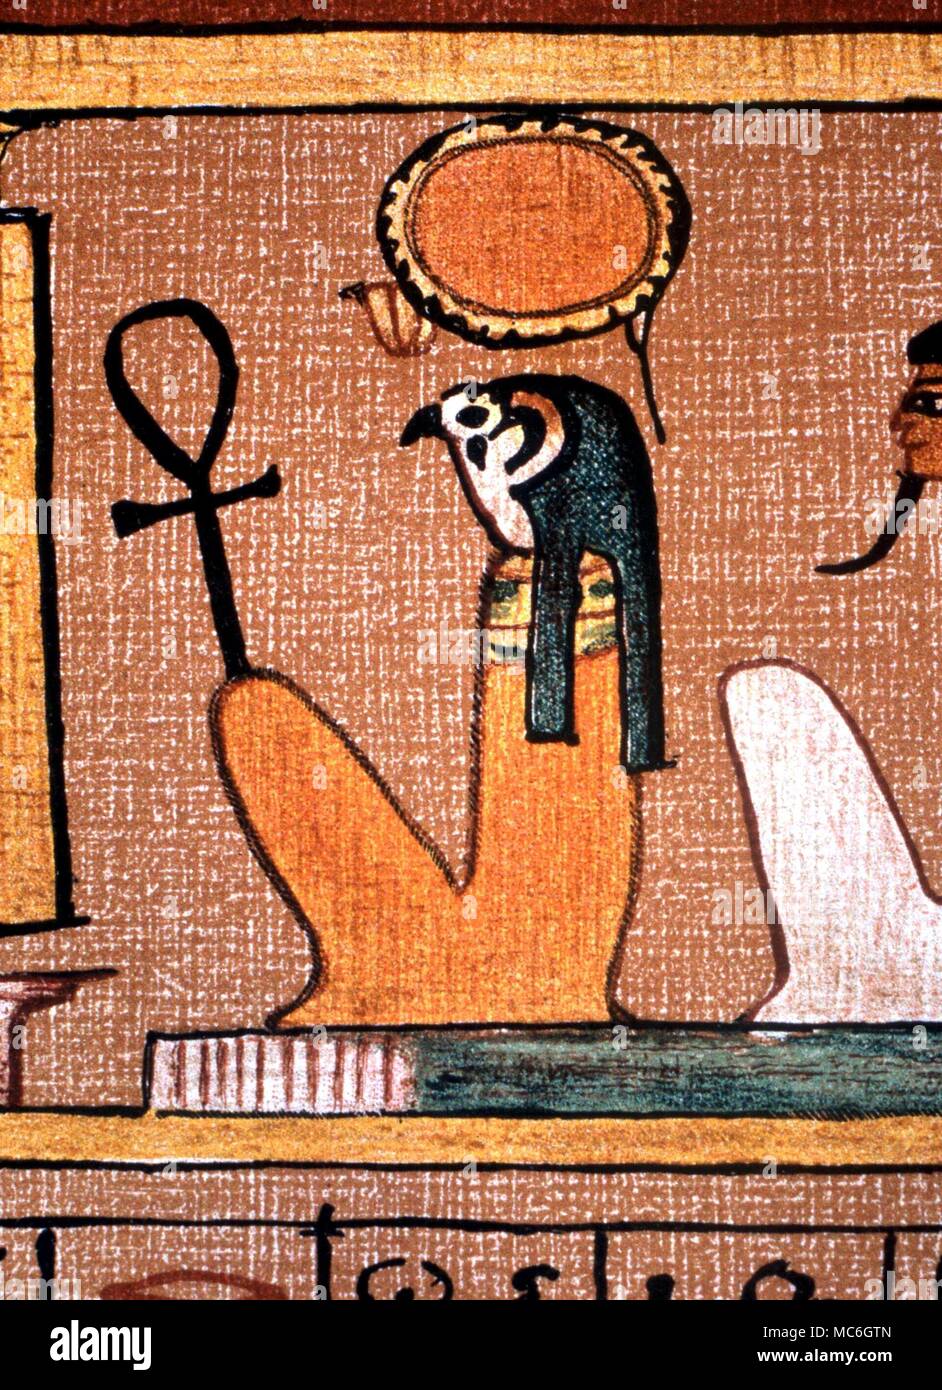 La mythologie égyptienne - ankh égyptien ancien - tenue à la main d'un dieu à tête d'Horus, à partir de la Livre des morts égyptien Banque D'Images